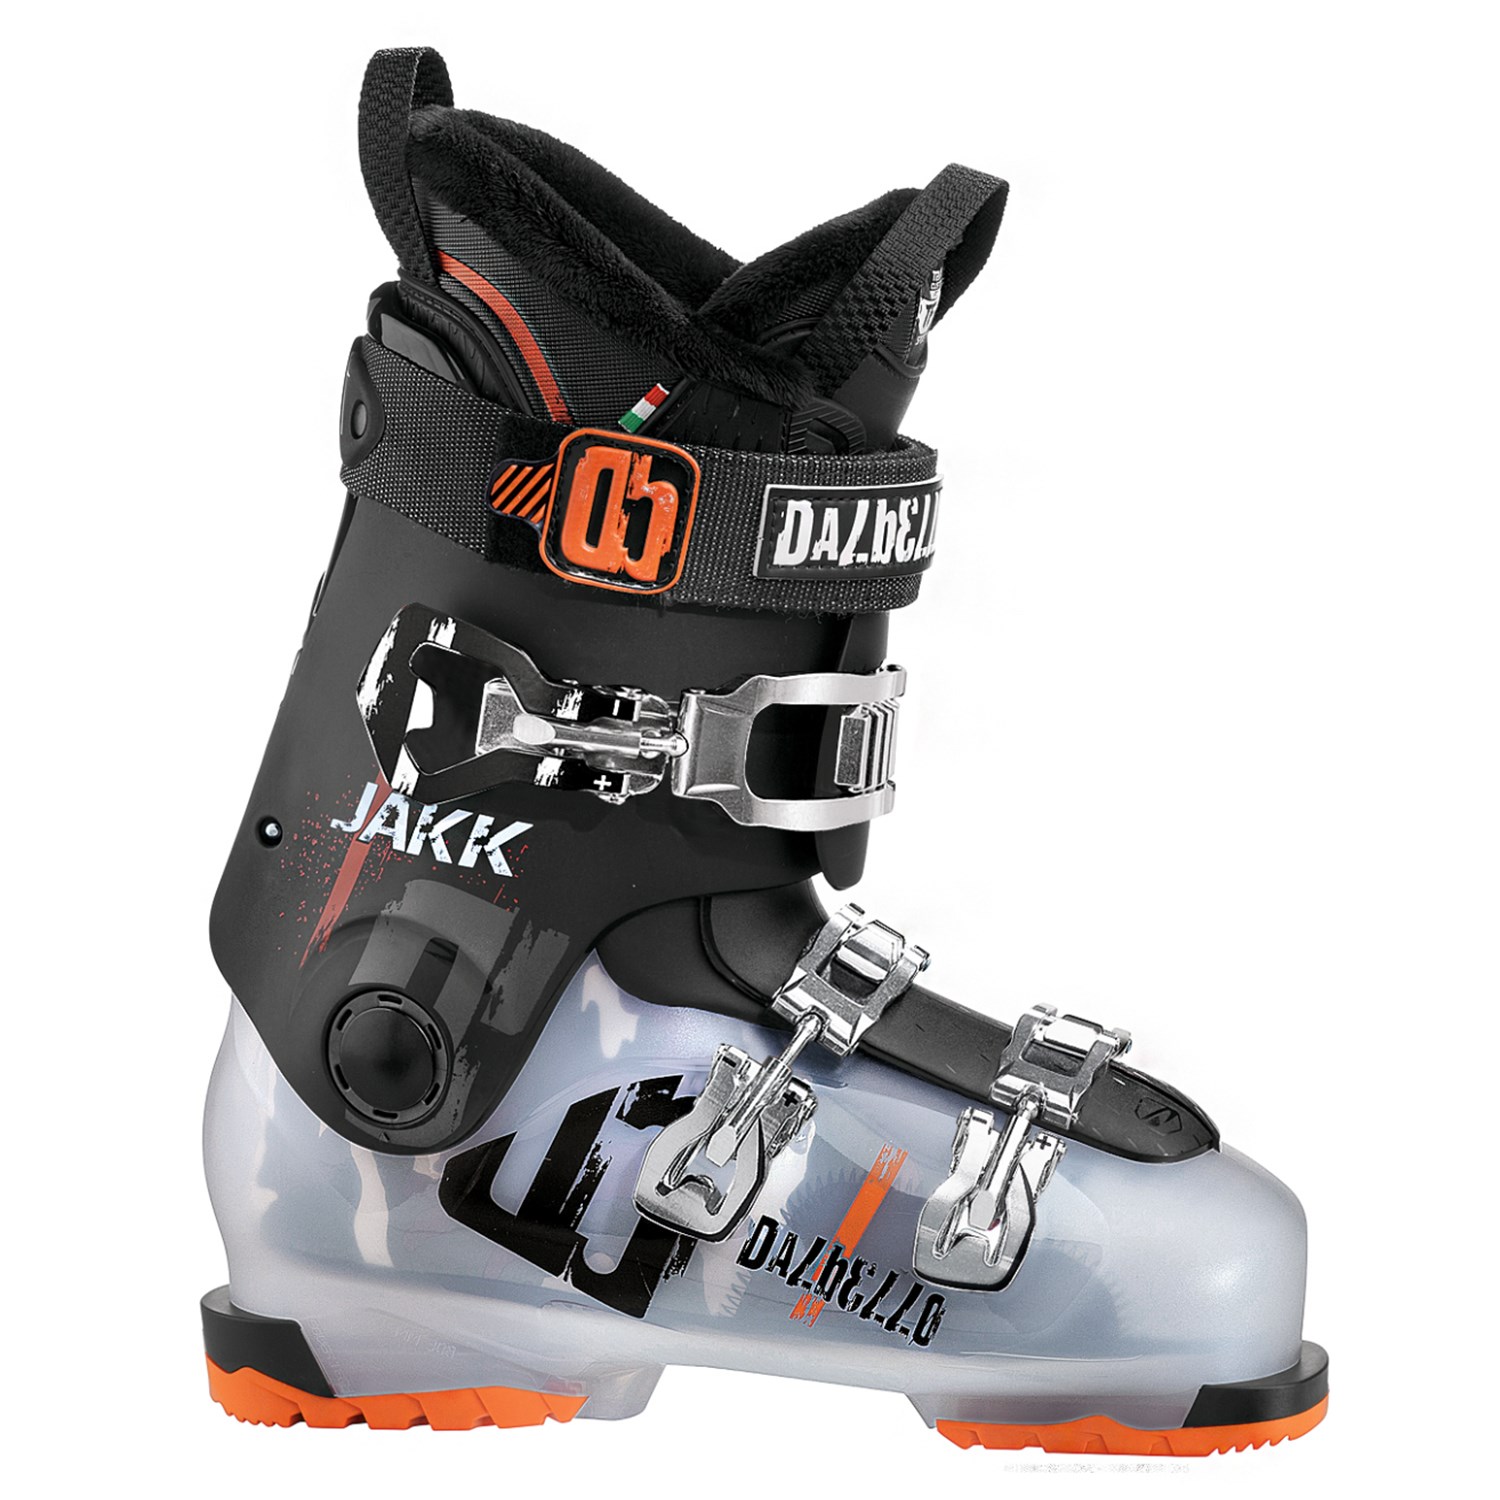 Dalbello Jakk Ski Boots 2016 | evo